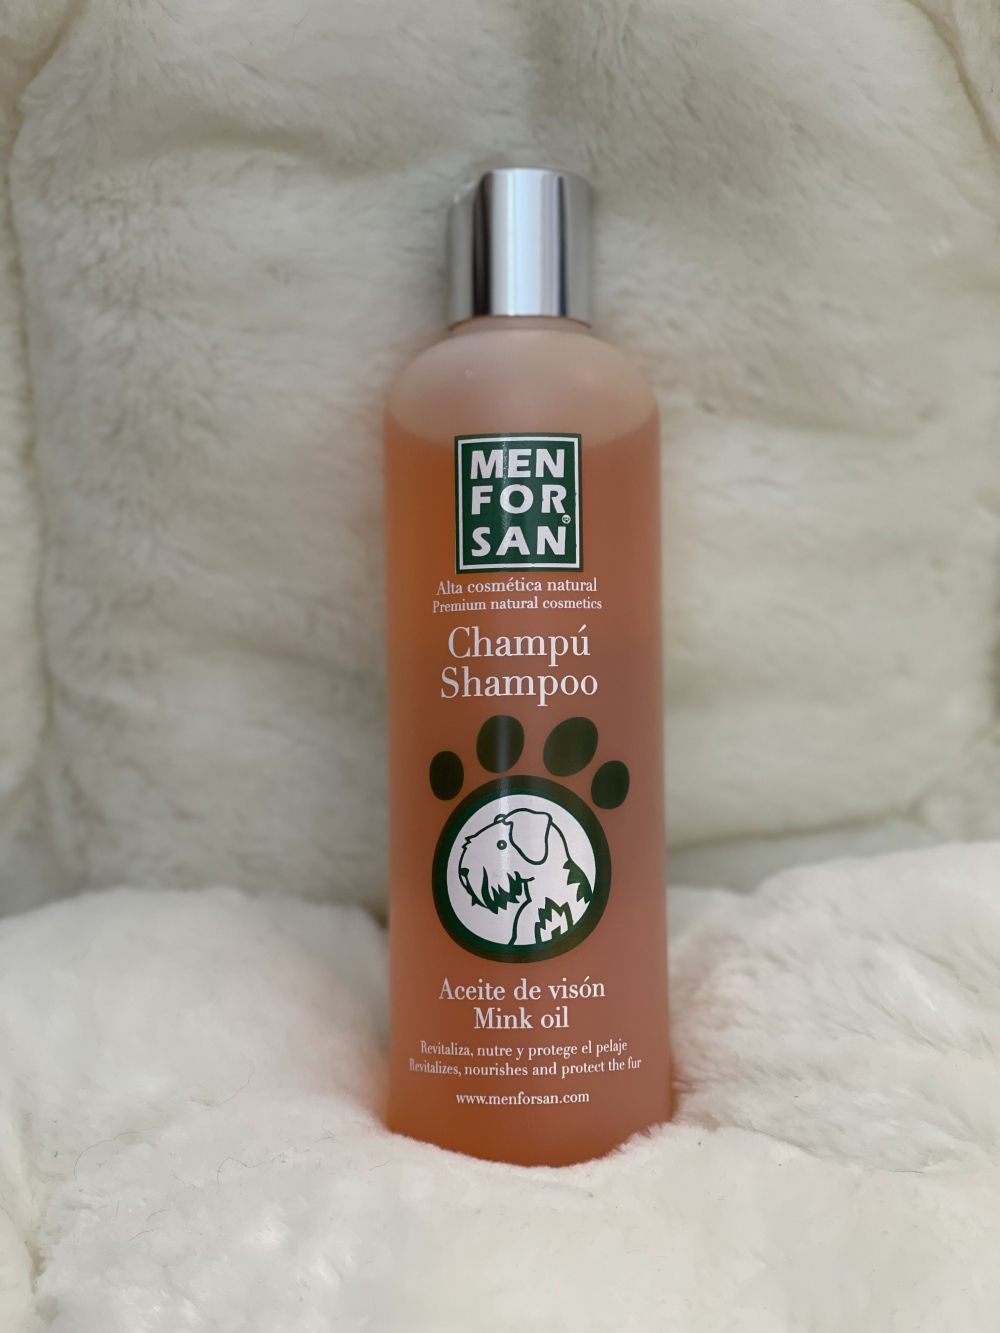 Shampoo av høy kvalitet med minkolje som forsterker pelsens naturlige glans. Mink olje beskytter og gir næring til pelsen, samtidig som den gir høy fuktighet i tørt og knyttet hår.